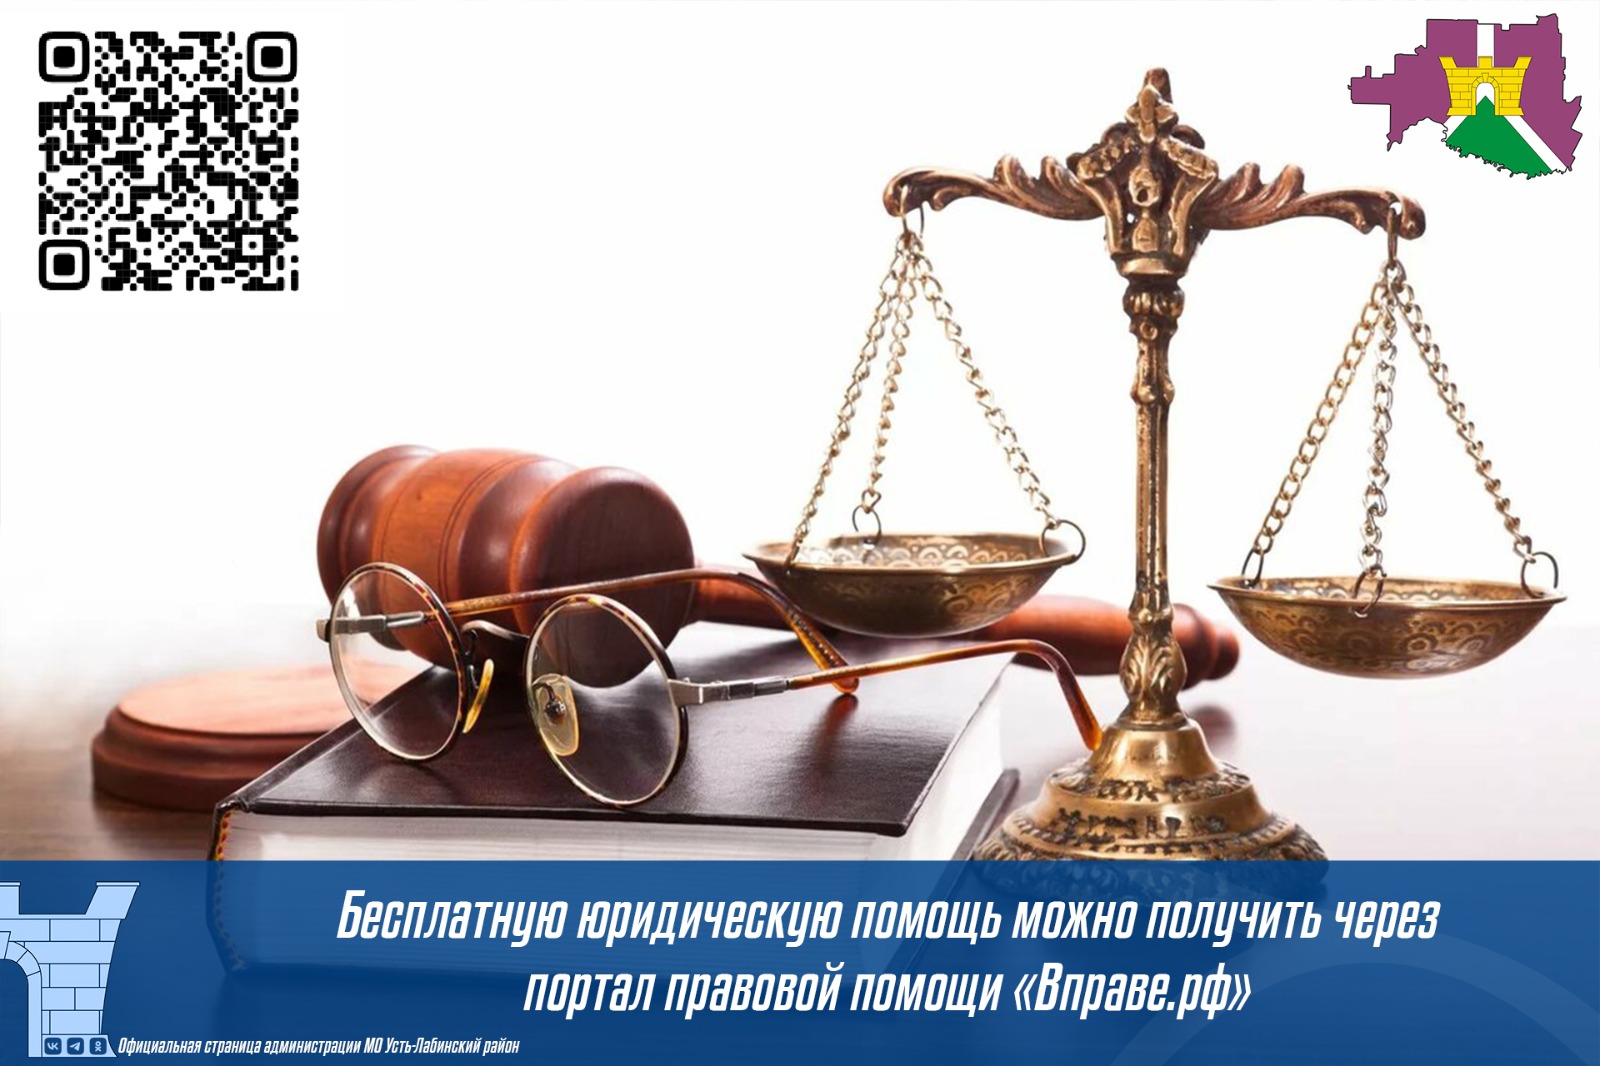 Бесплатная юридическая помощь через портал правовой помощи "Вправе.рф"